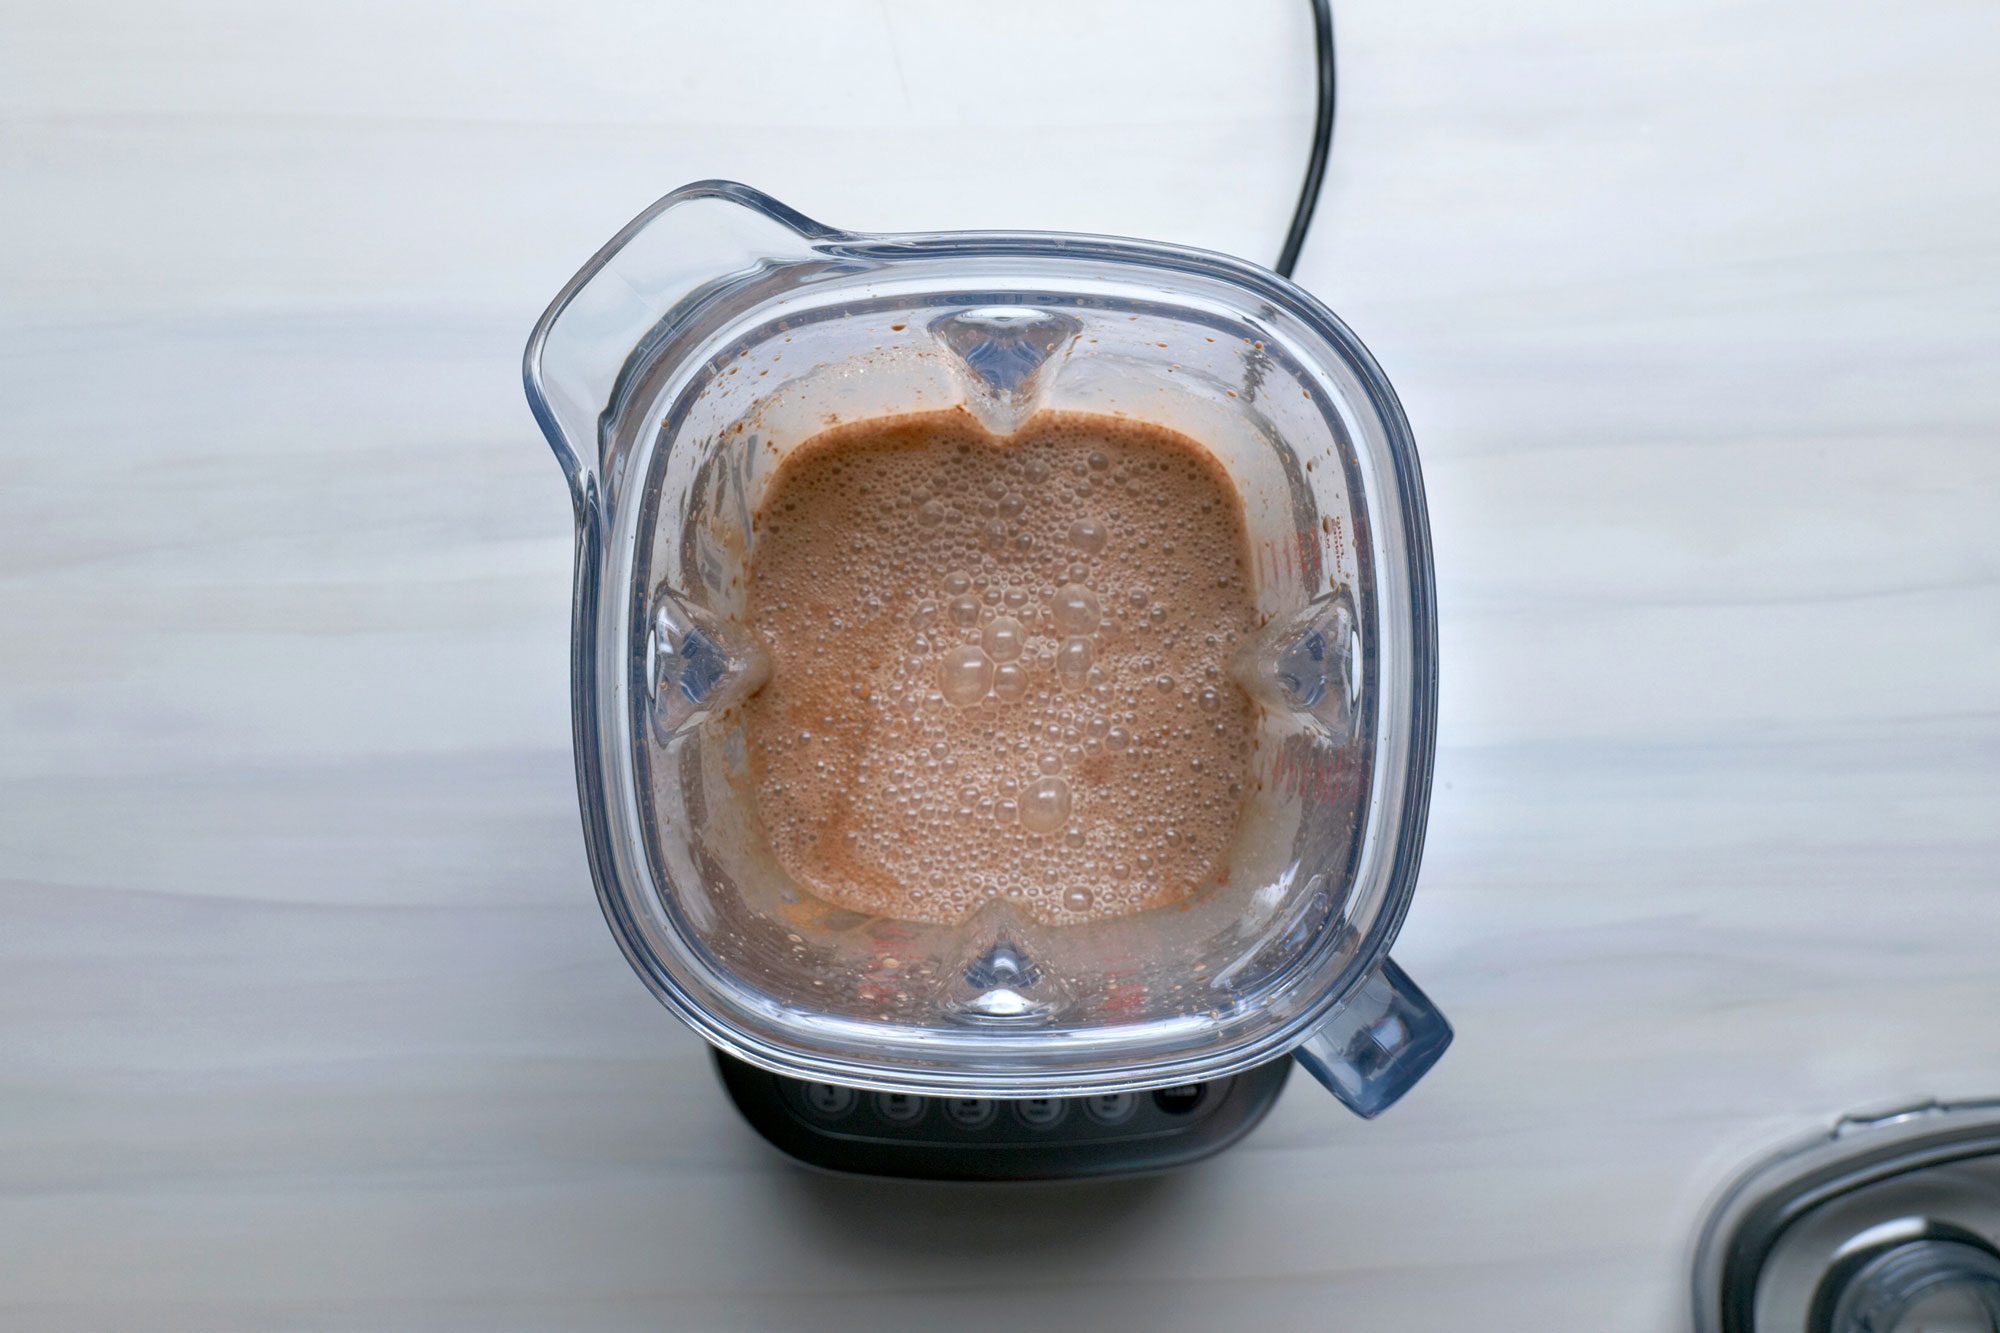 Combine sugar, cocoa and vanilla in a blender